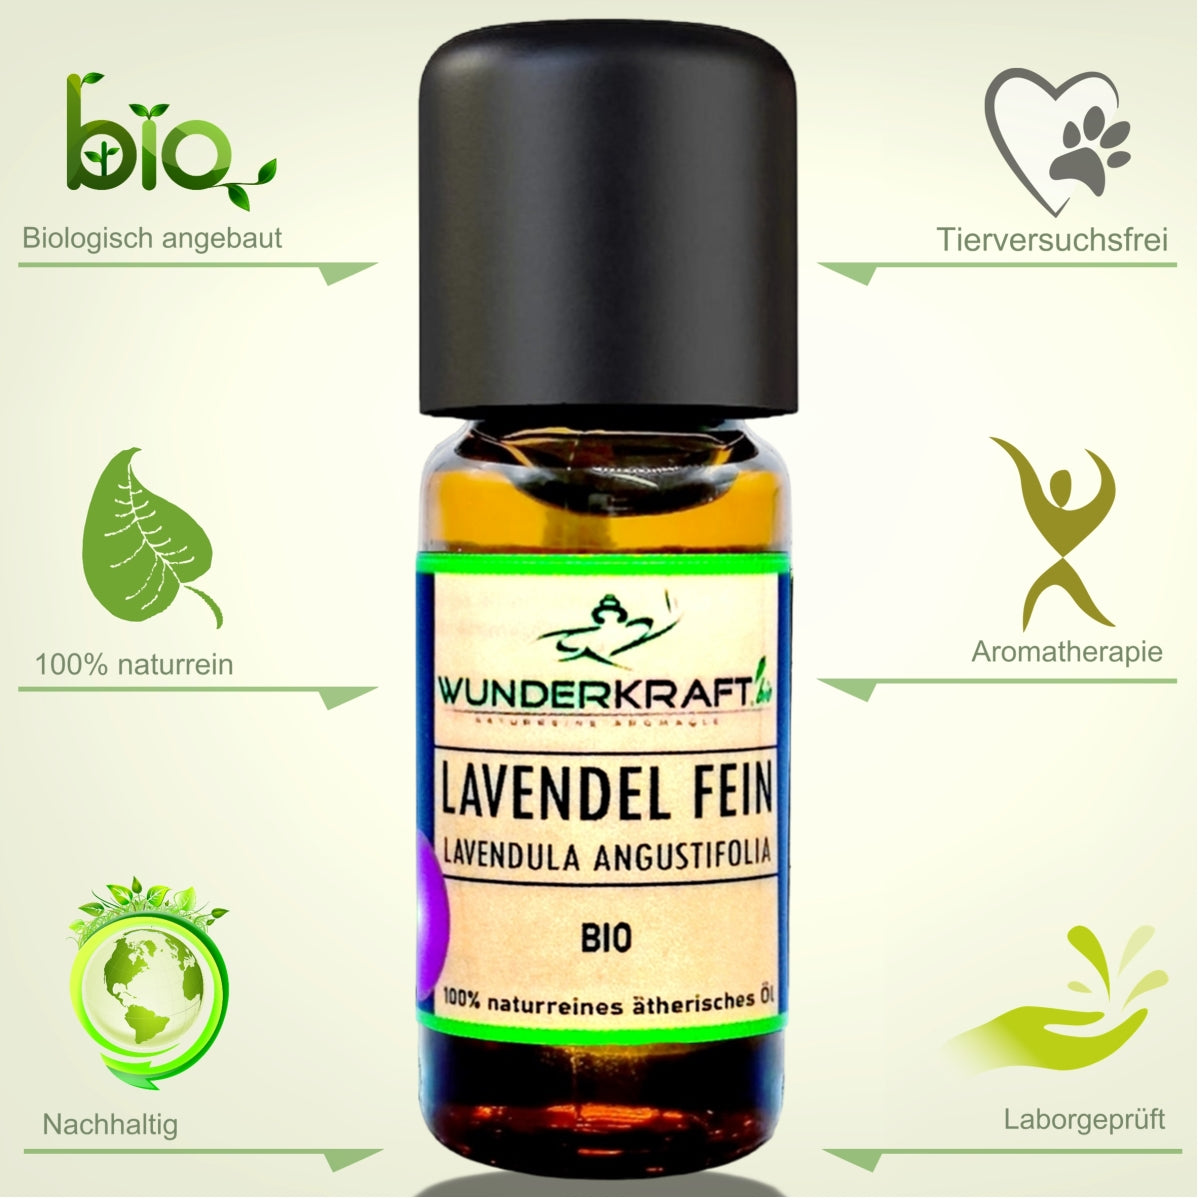 BIO Lavendelöl fein, 100% naturreines ätherisches Aromaöl